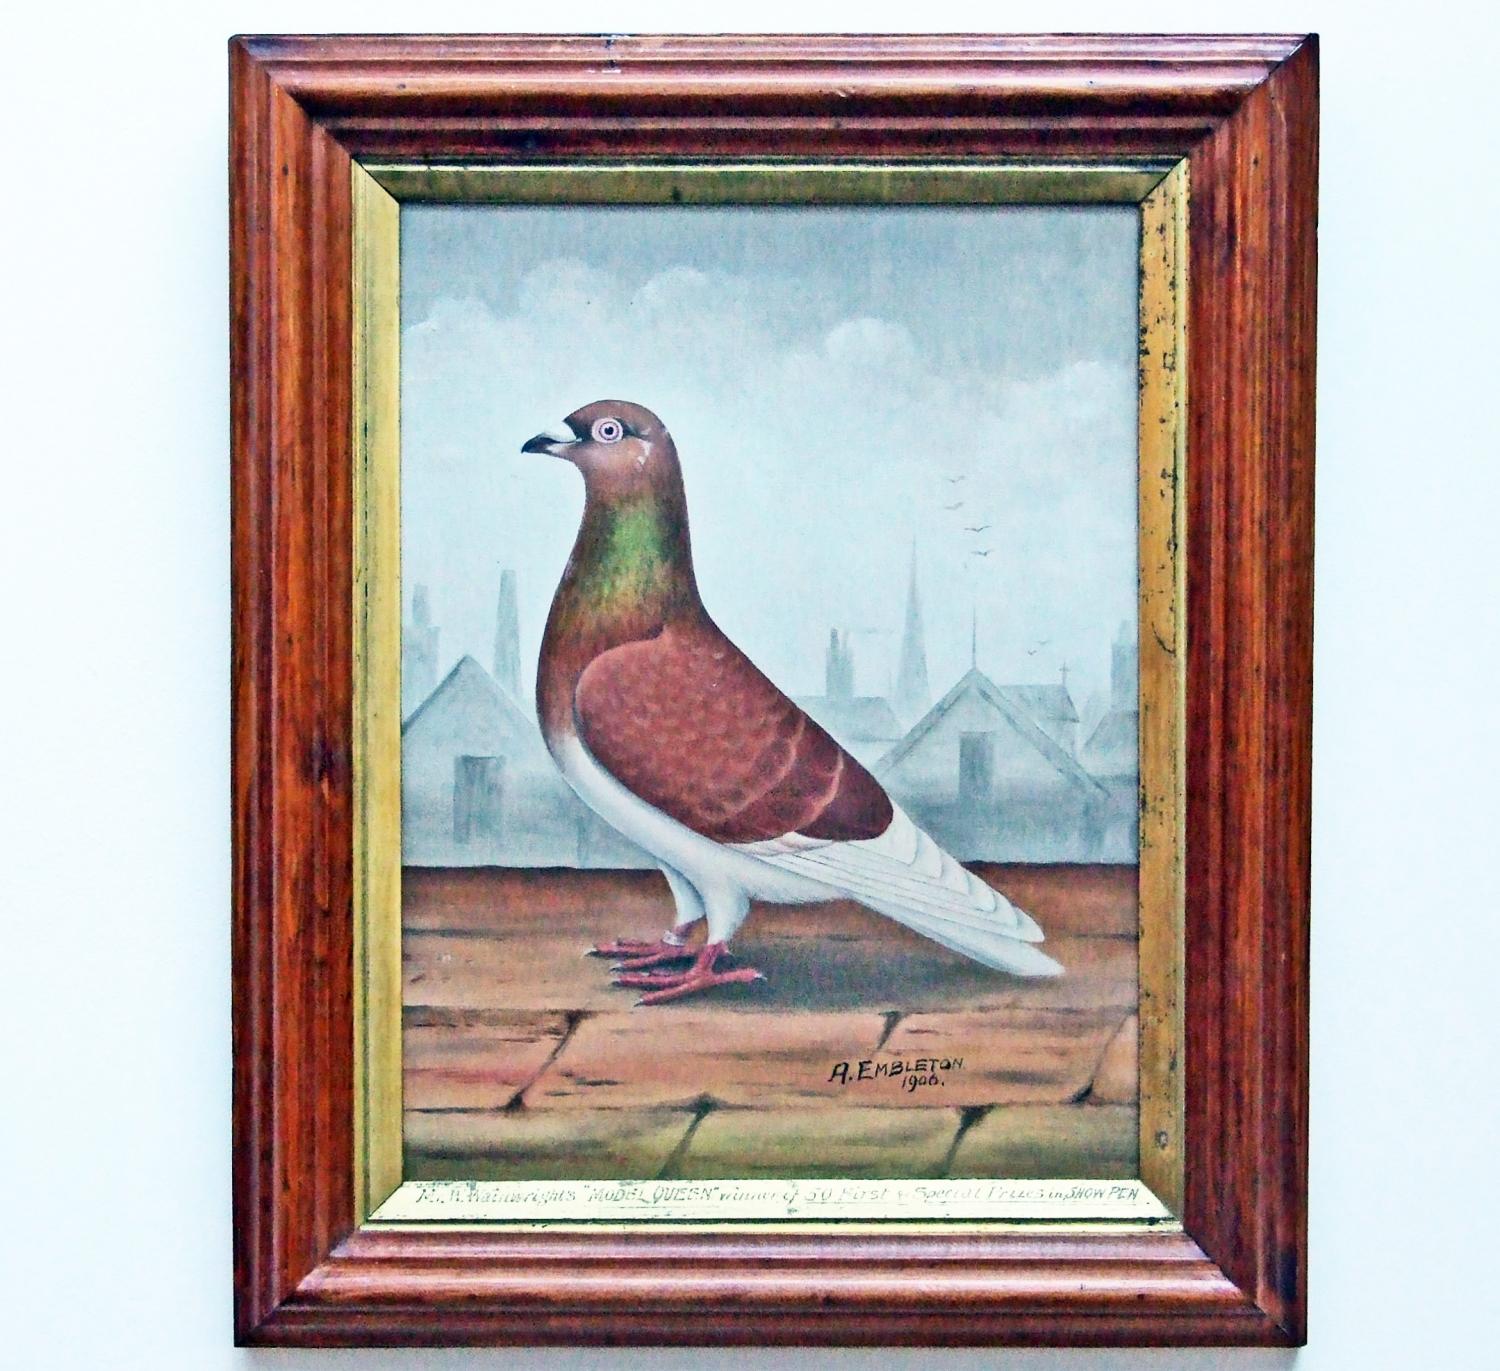 Show pigeon portrait by Embleton